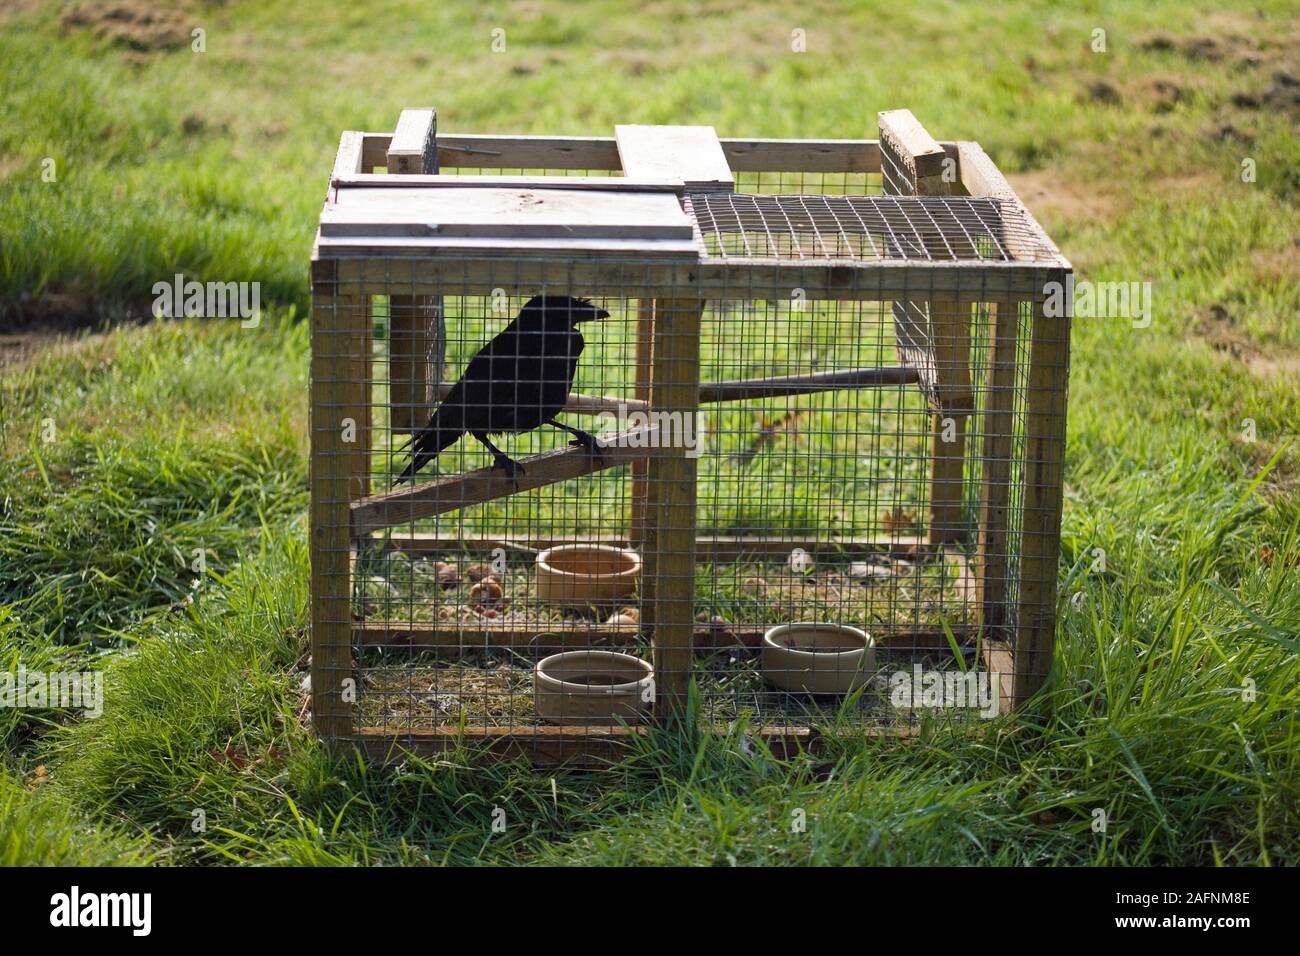 LARSEN trampa usada para controlar los números de corvids (cuervos), considerados como plagas o 'vermin fincas administradas por el juego'. Viven aves señuelo utilizado. Legal. Foto de stock